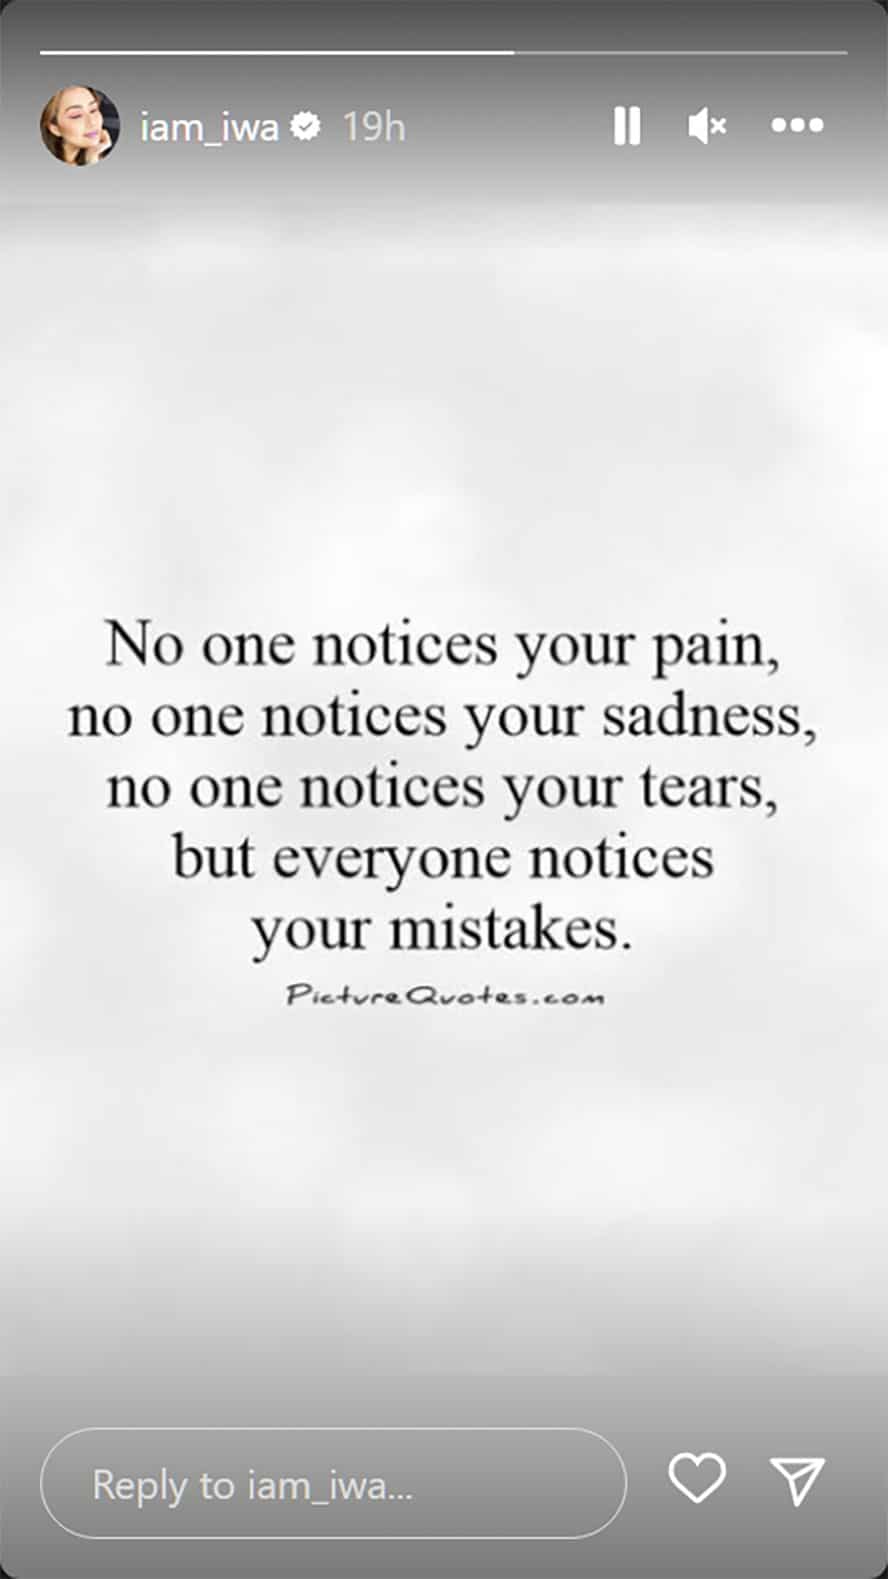 Iwa Moto, nagbahagi ng isang hugot quote: "No one notices your pain"